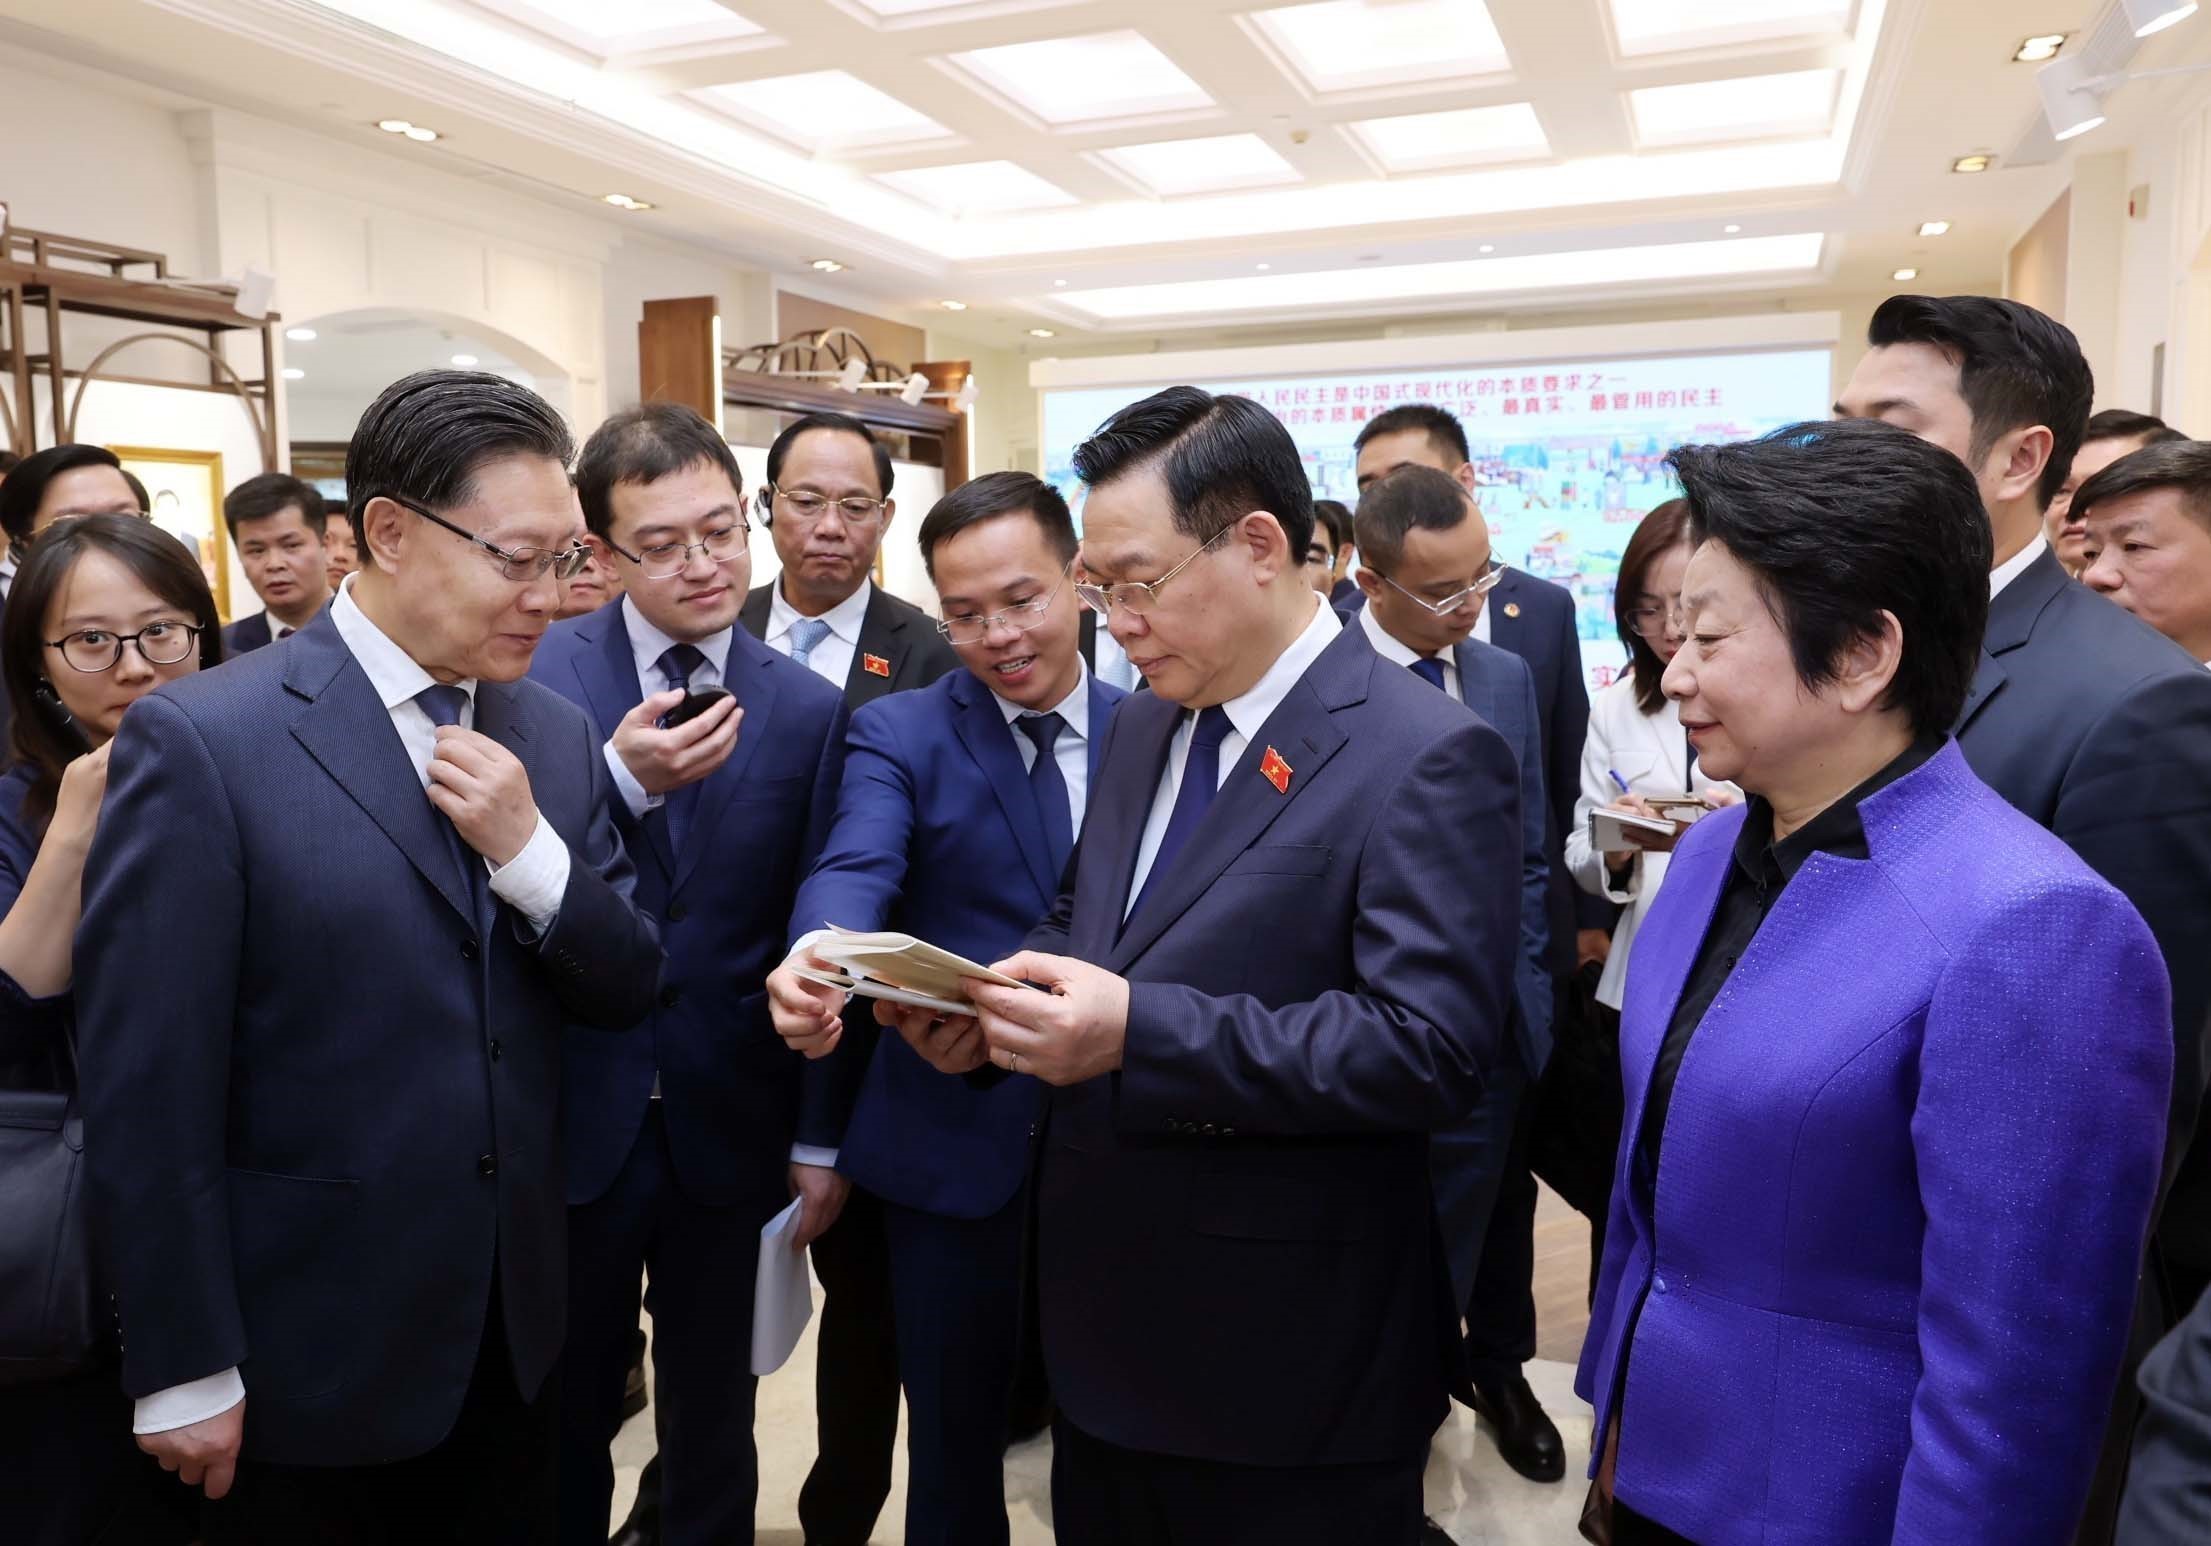 Chủ tịch Quốc hội Vương Đình Huệ thăm Trung tâm lập pháp Hồng Kiều